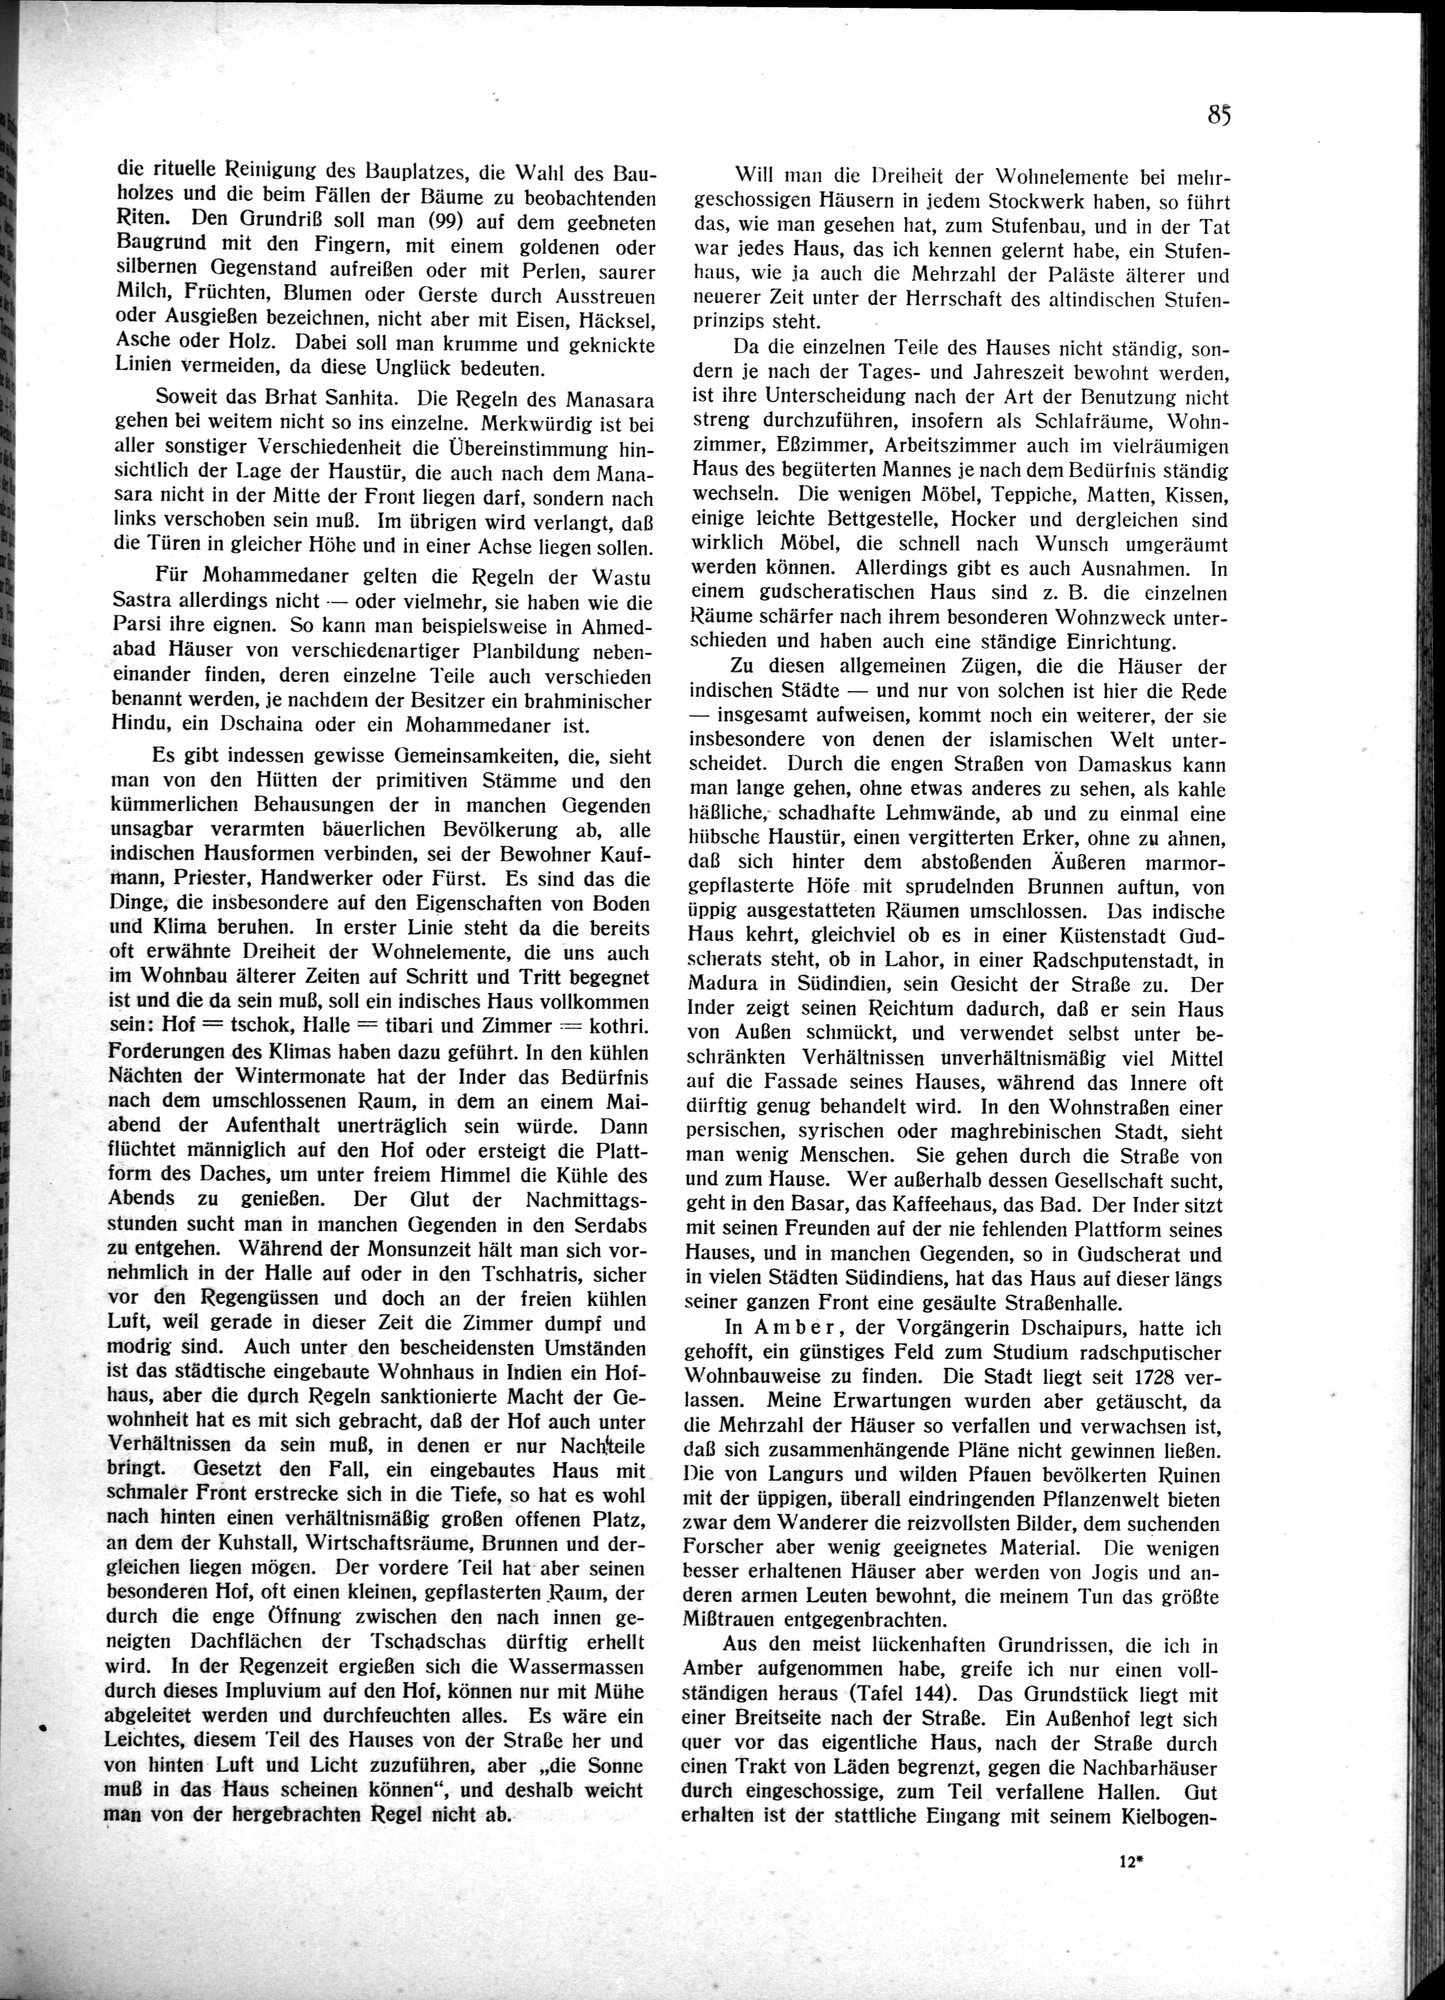 Indische Palaste und Wohnhauser : vol.1 / Page 95 (Grayscale High Resolution Image)